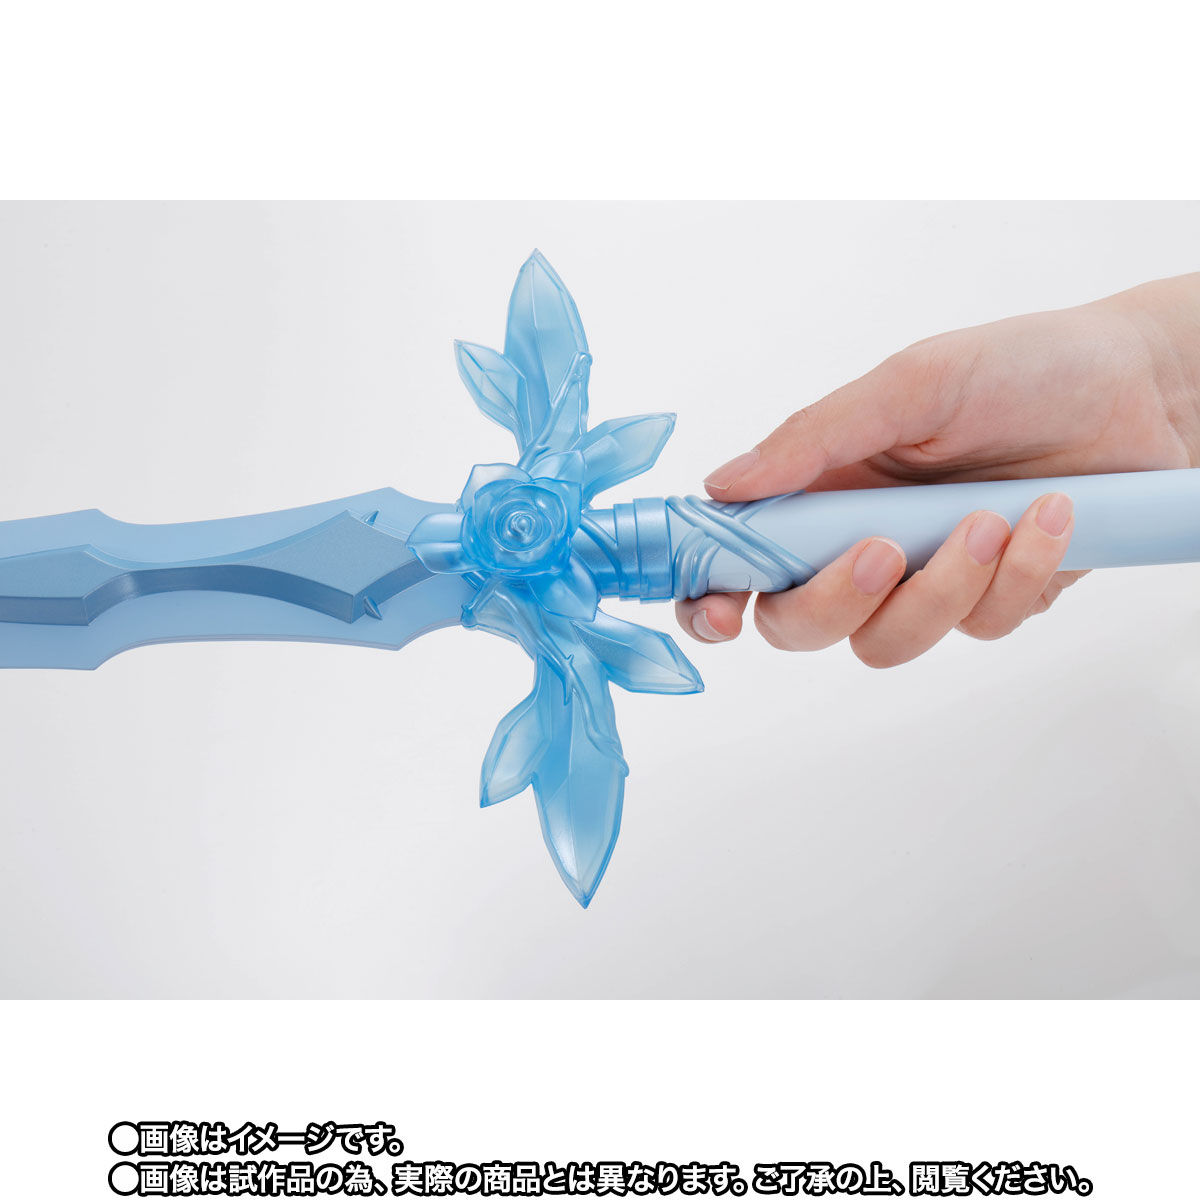 【限定販売】PROPLICA プロップリカ『青薔薇の剣』ソードアート・オンライン 変身なりきり-005